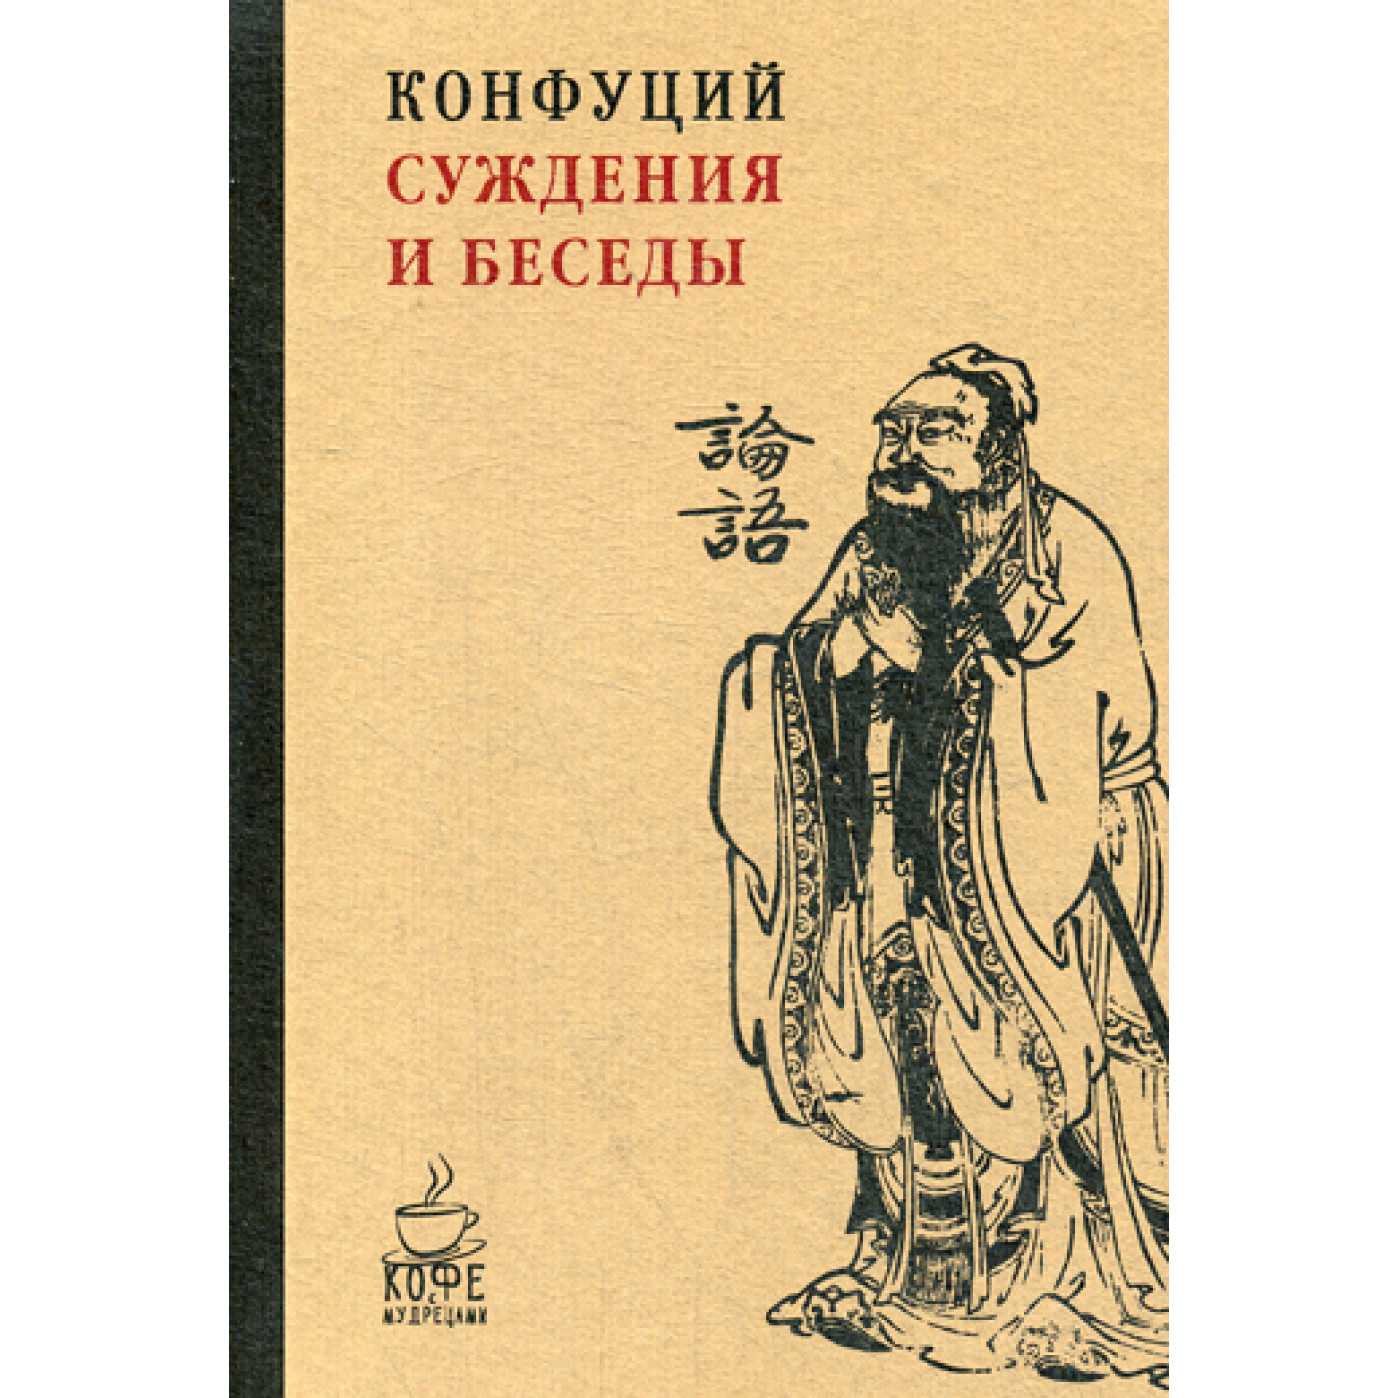 Книга конфуция лунь юй. Книга беседы и суждения Конфуция. Конфуций. Беседы и суждения. Книга Лунь Юй Конфуция. Книга Лунь Юй беседы и суждения.